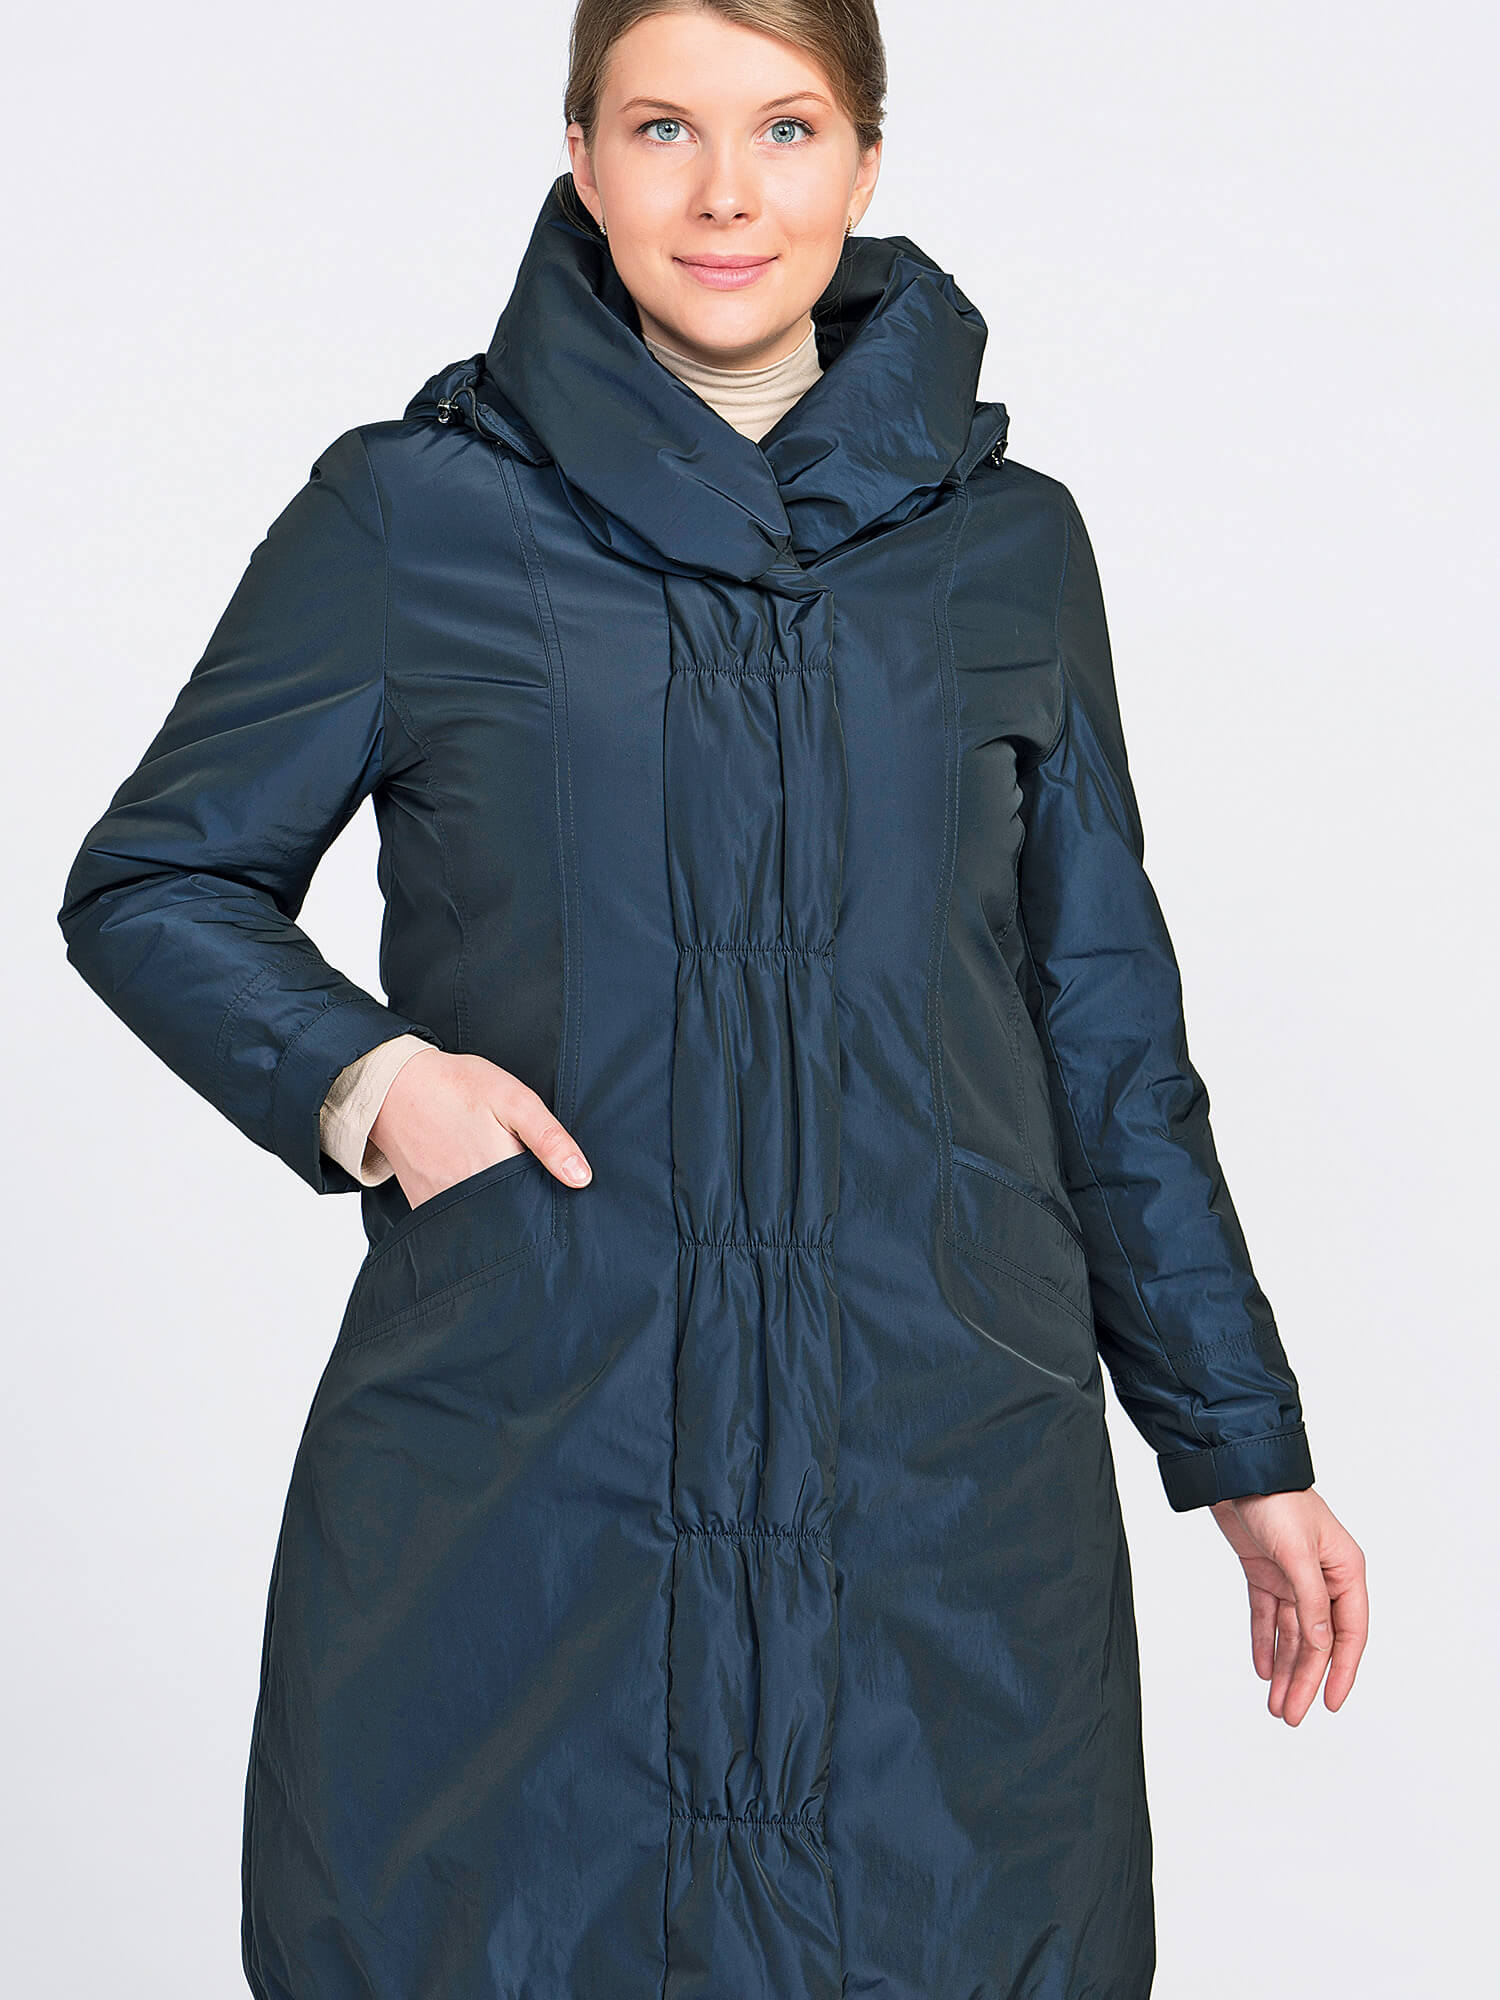 Куртки дикси. Пальто Dixi Coat. Пальто финское Dixi Coat. Пальто Dixi Coat 6120-294 (82). Финское пальто для женщин Dixi Coat.